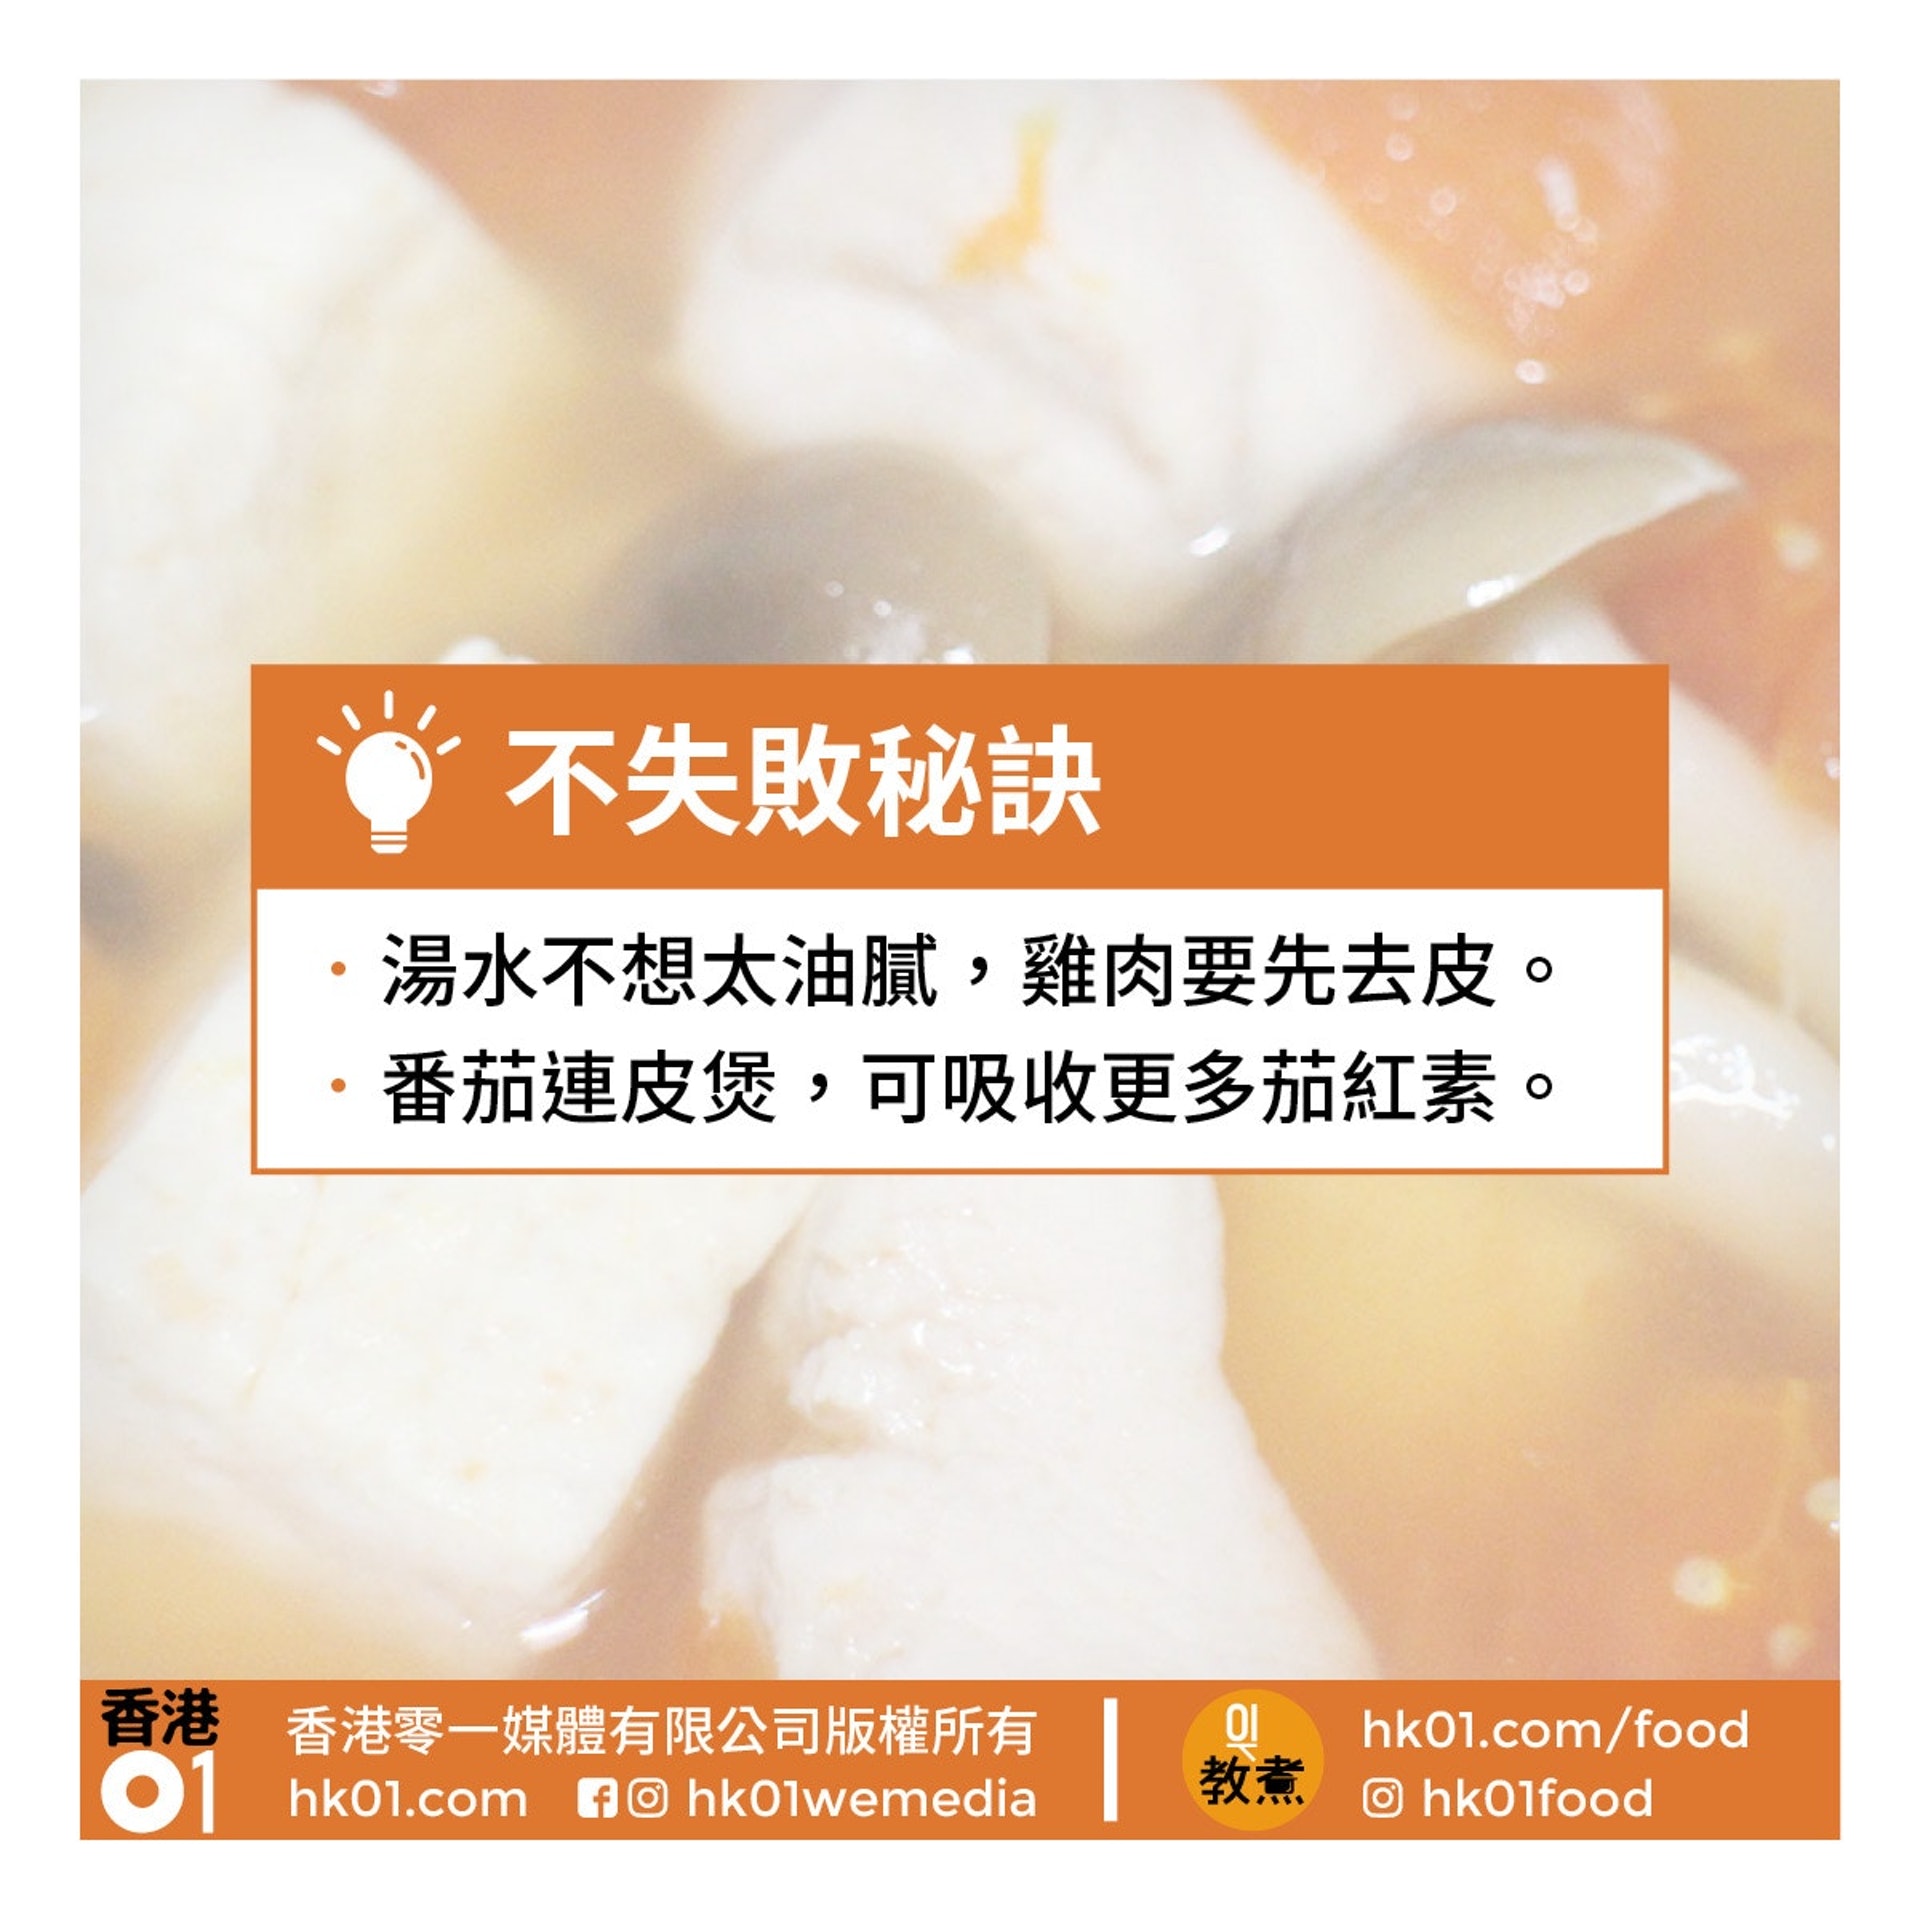 番茄豆腐雞湯食譜